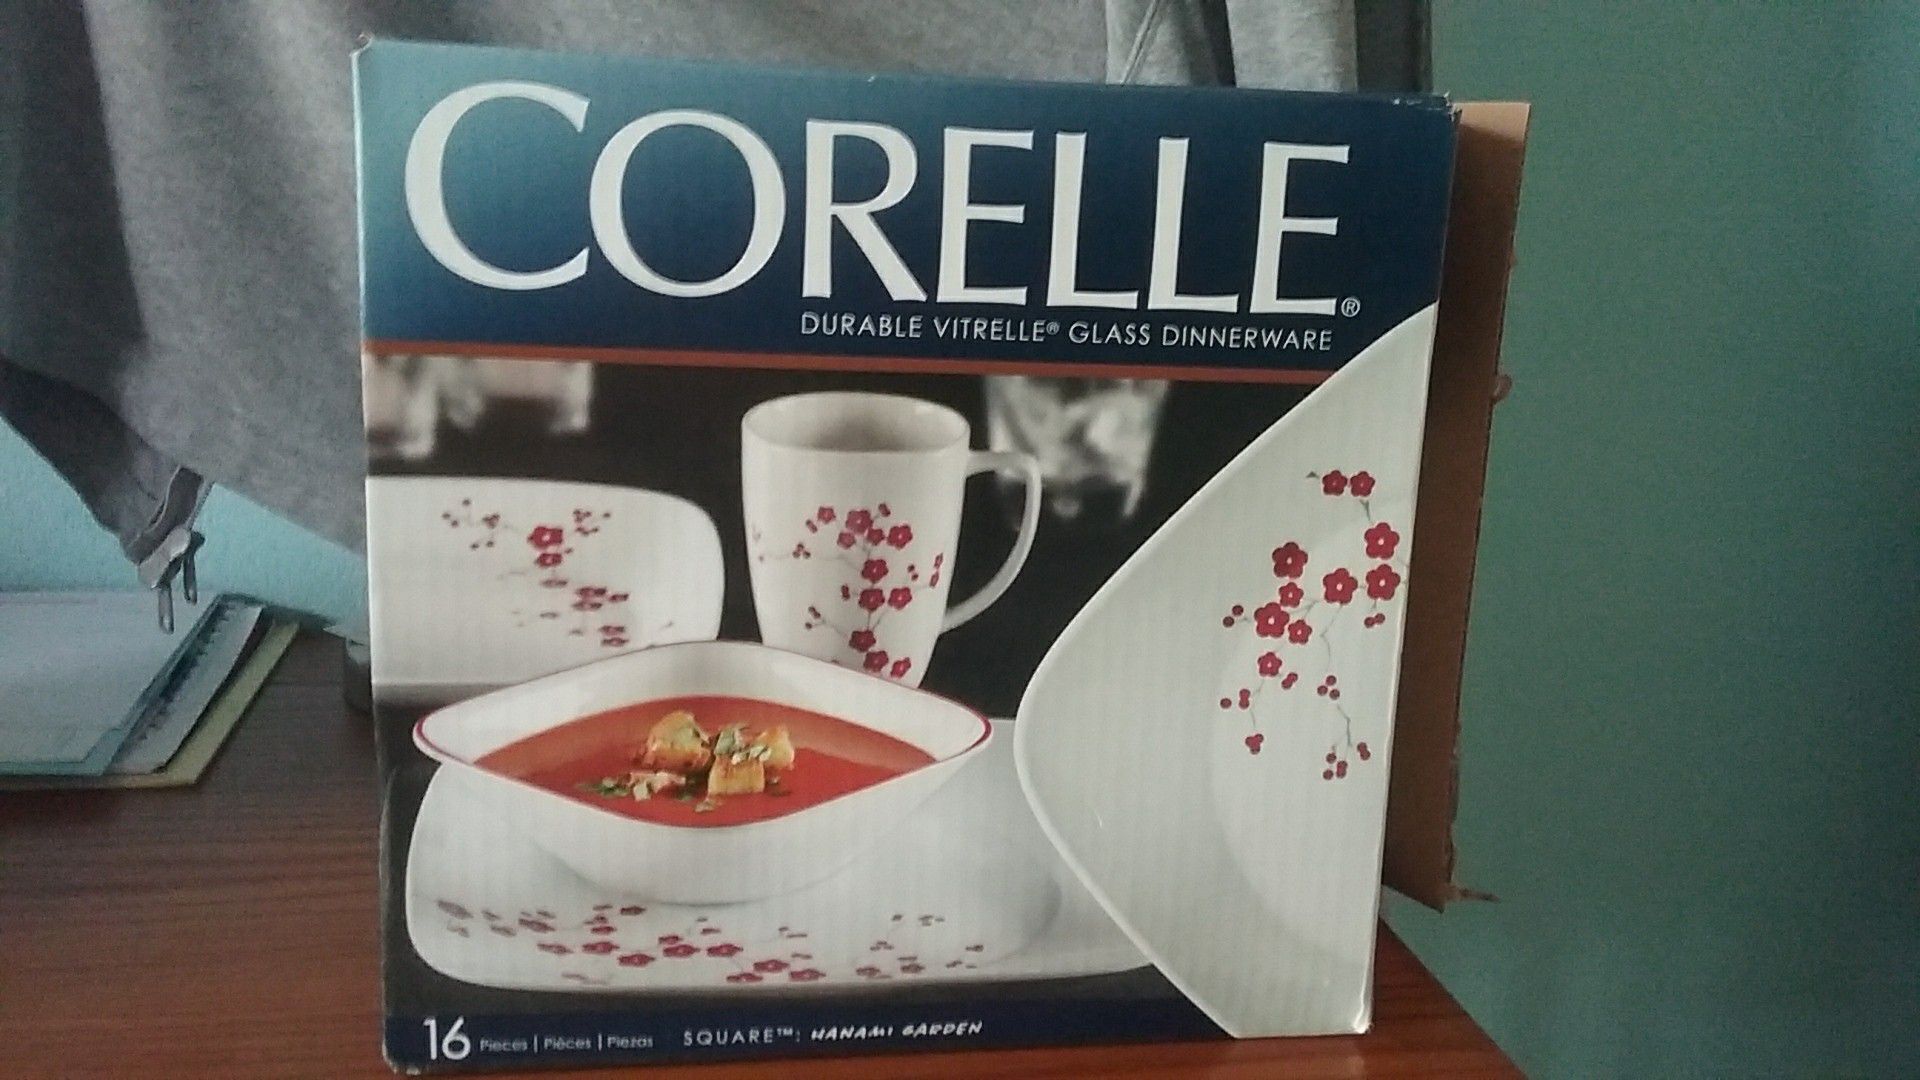 Corelle 16 piece